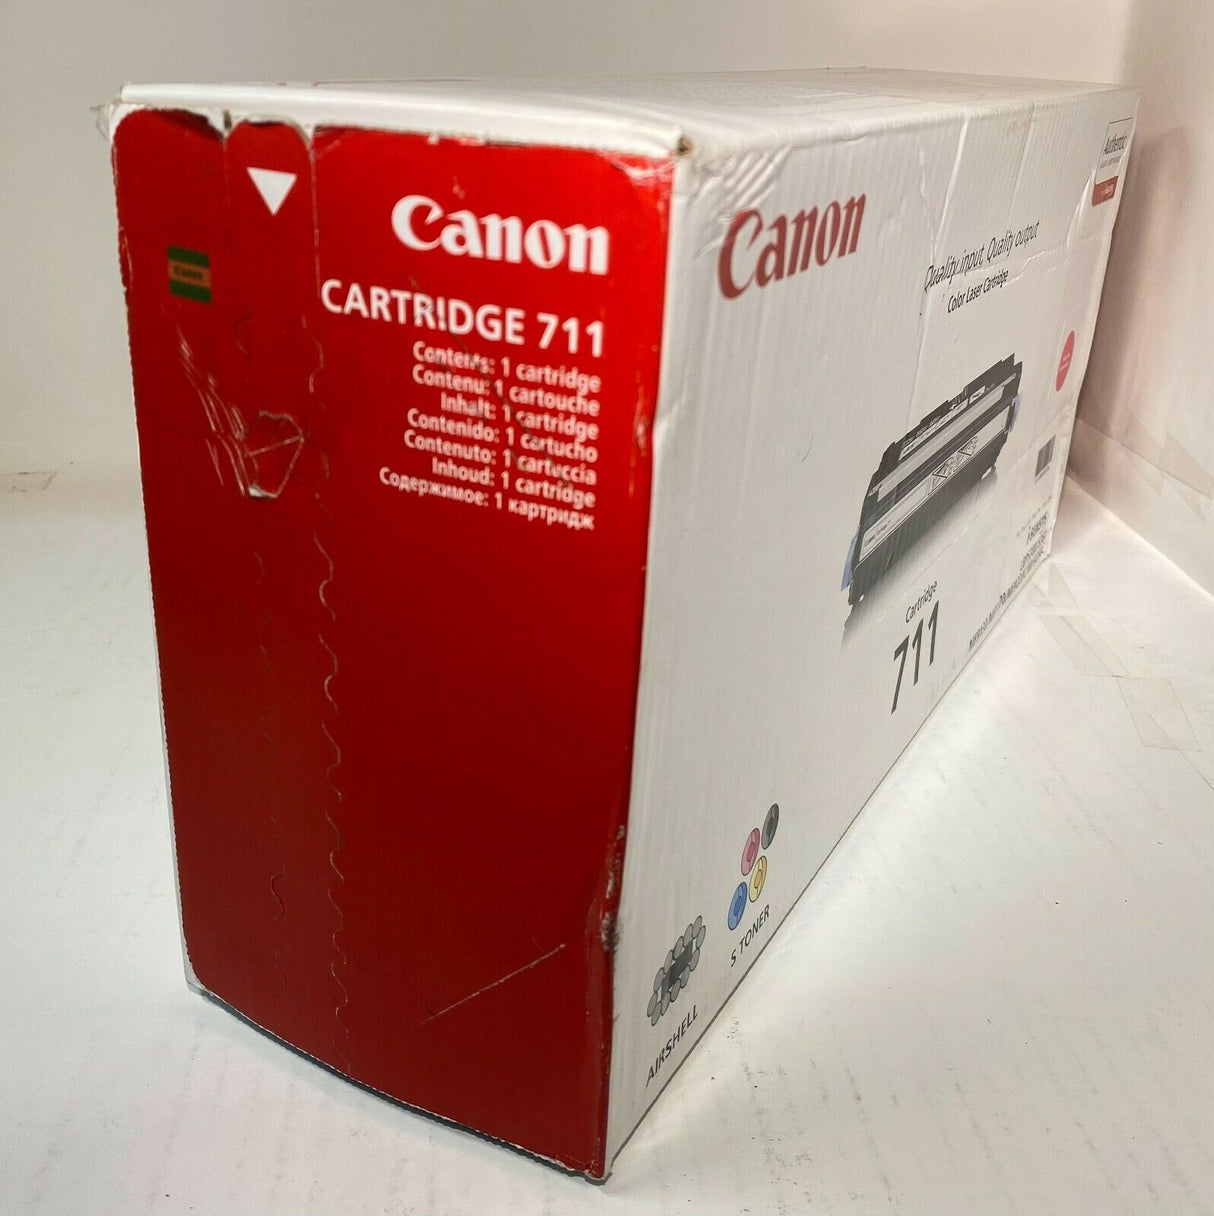 "Original CANON Cartridge 711 Toner Magenta 1658B002 LBP 5300 MF 9130 9220 9280